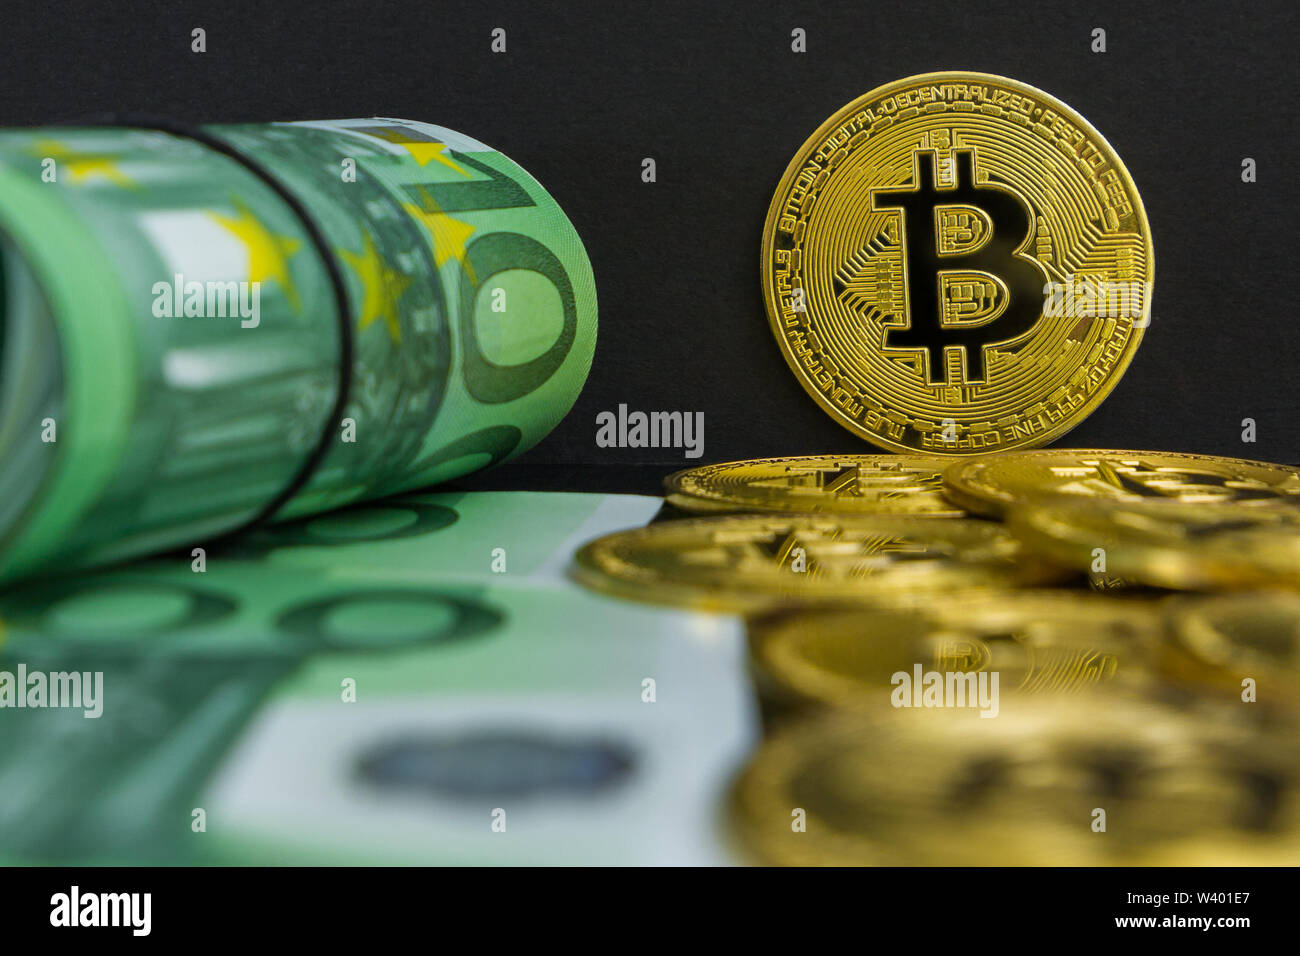 Euro vs Bitcoin cryptocurrency. Es gibt Hundert Euro-Banknoten und großen goldenen btc Münzen auf einem schwarzen Hintergrund. Golden bitcoin über Euro Geld Stockfoto